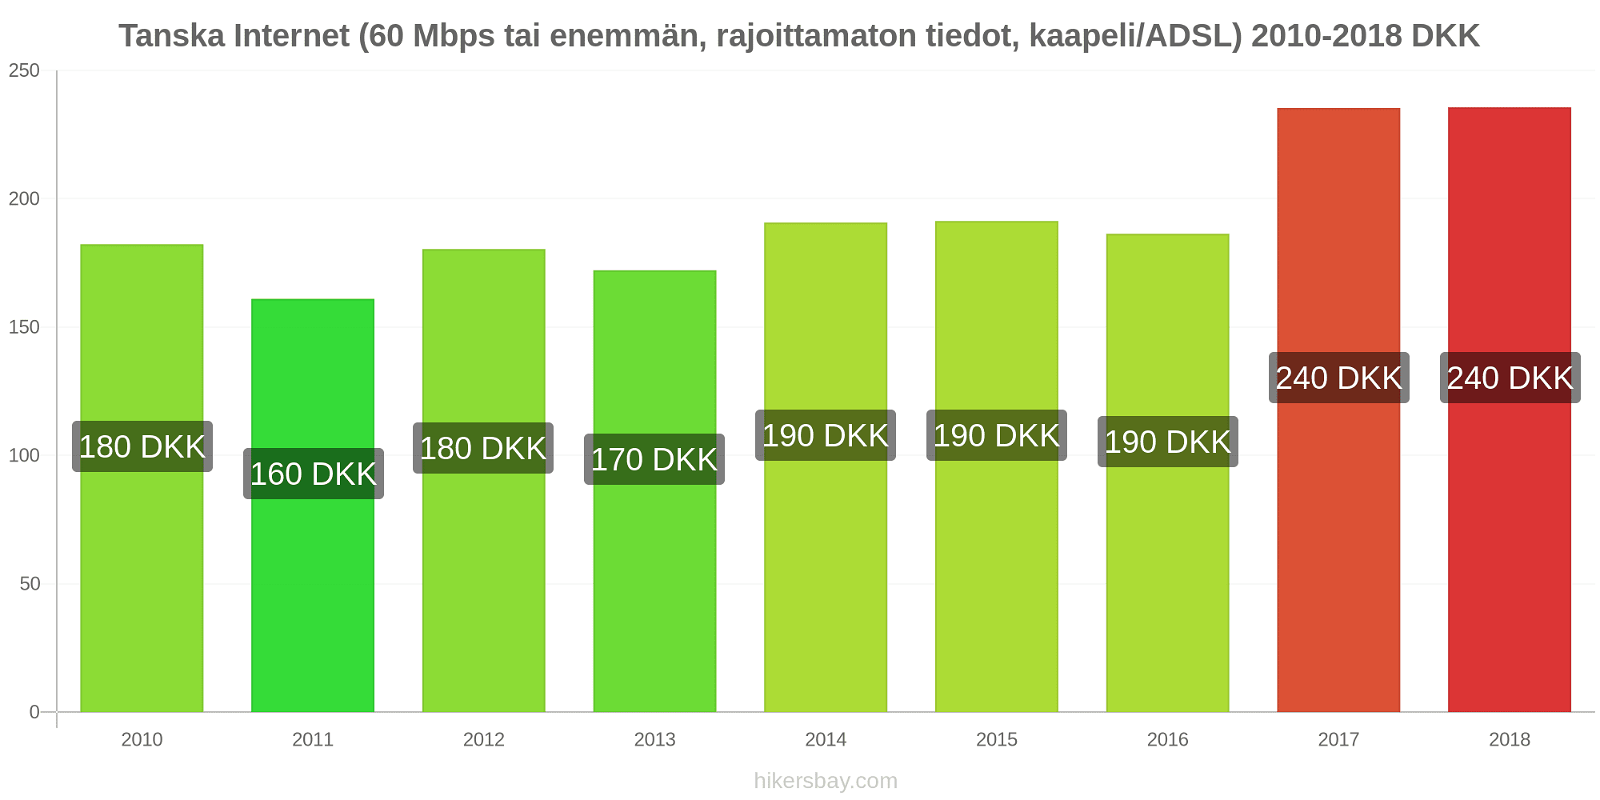 Tanska hintojen muutokset Internet (60 Mbps tai enemmän, rajoittamaton tiedot, kaapeli/ADSL) hikersbay.com